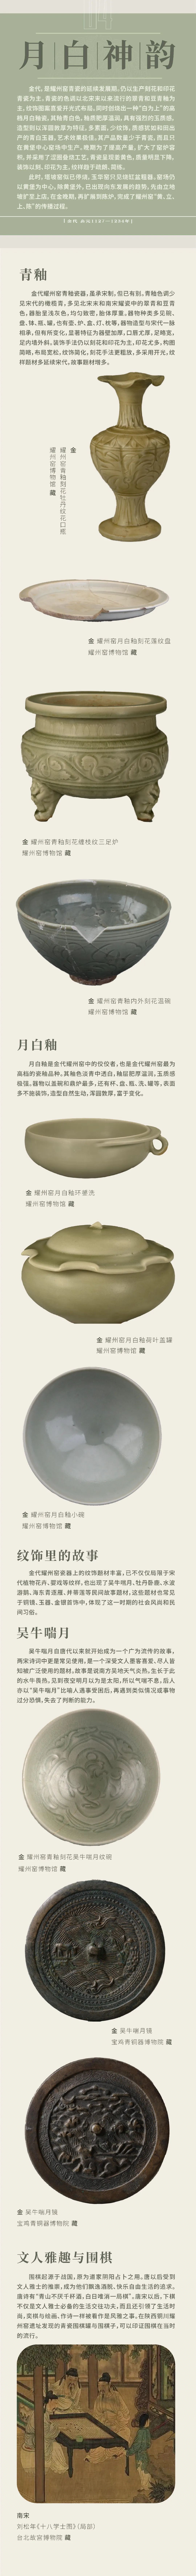 线上展览：《范金琢玉——耀州窑历代陶瓷精品展》第四期（月白神韵）